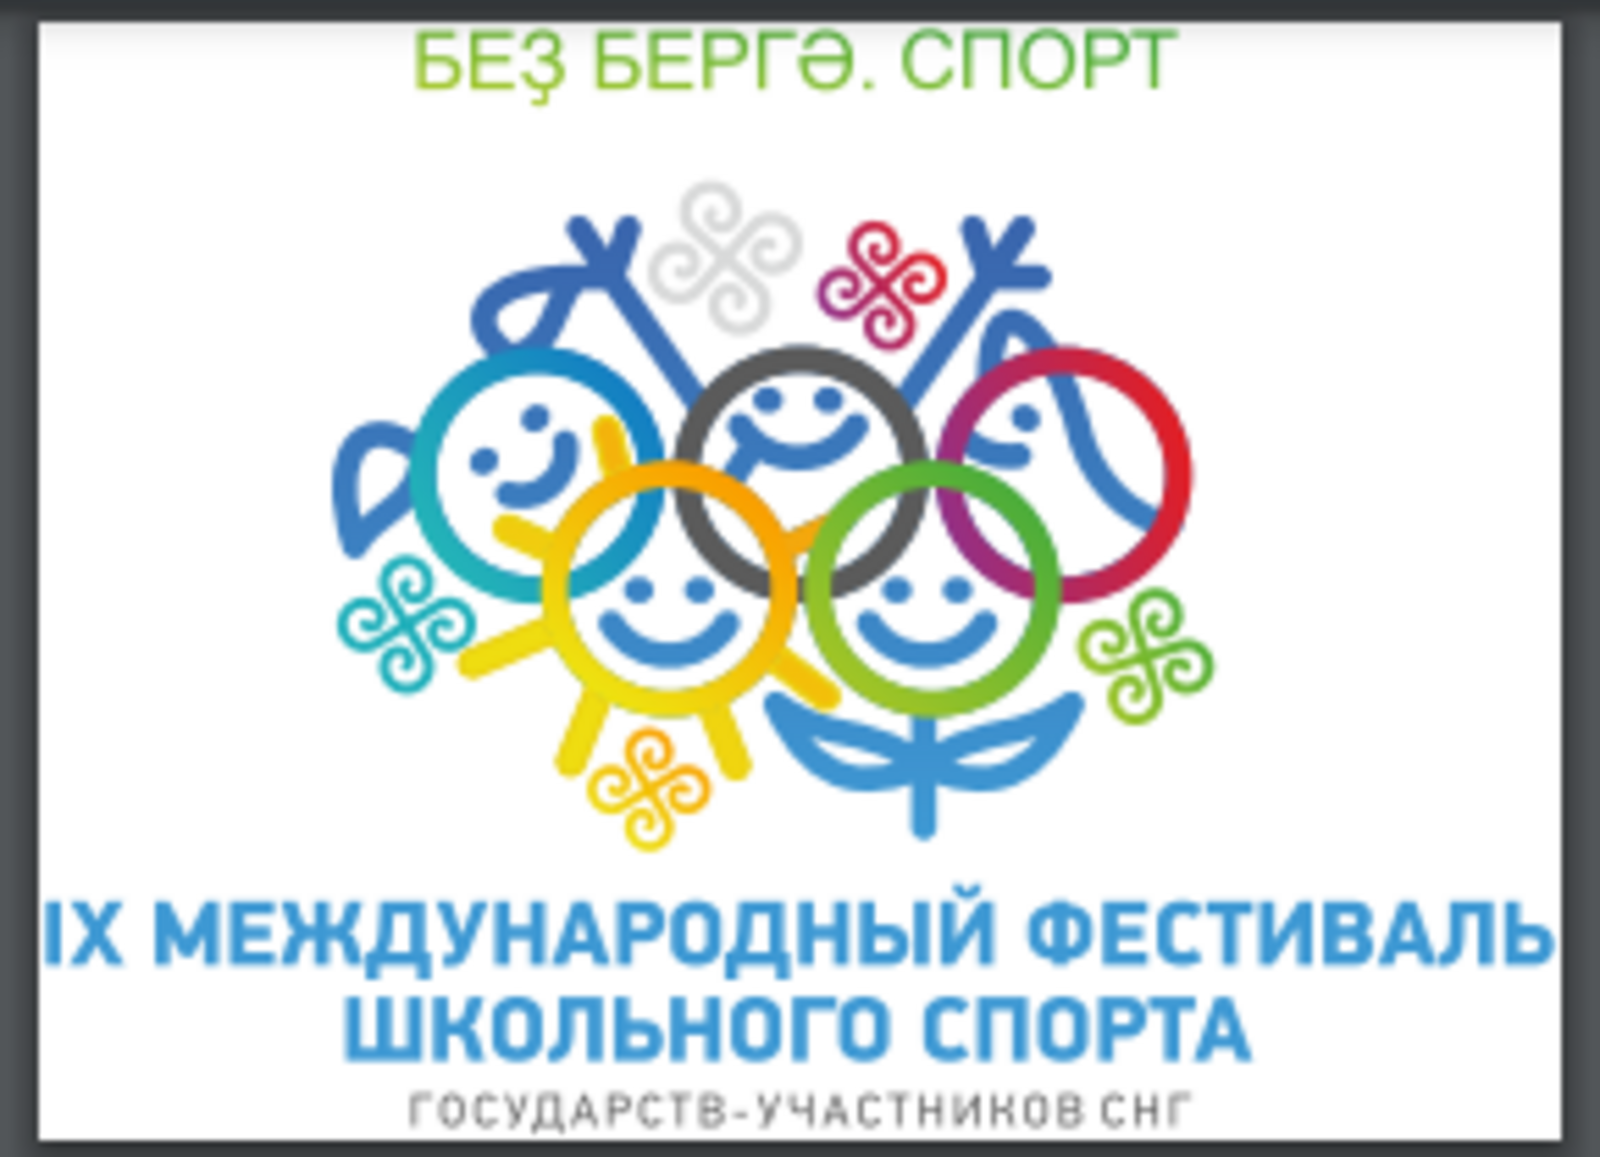 IX Международный фестиваль школьного спорта среди государств-участников СНГ